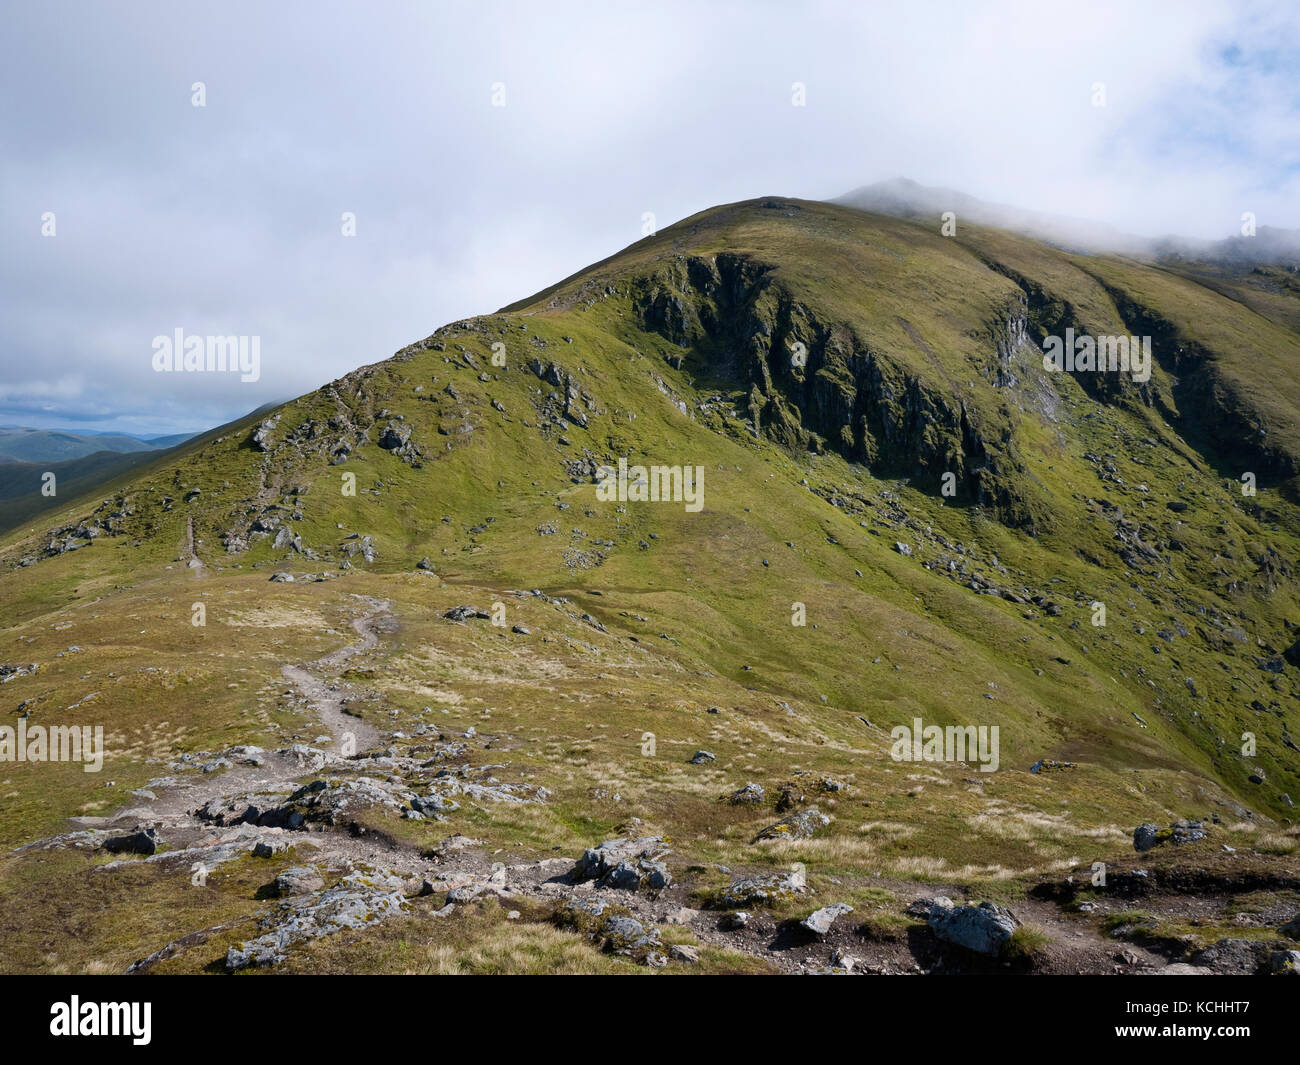 La cumbre de Ben Abogados (1214m), un munro en las Highlands escocesas, visto desde la cresta que va desde el adyacente munro de Beinn Ghlas Foto de stock